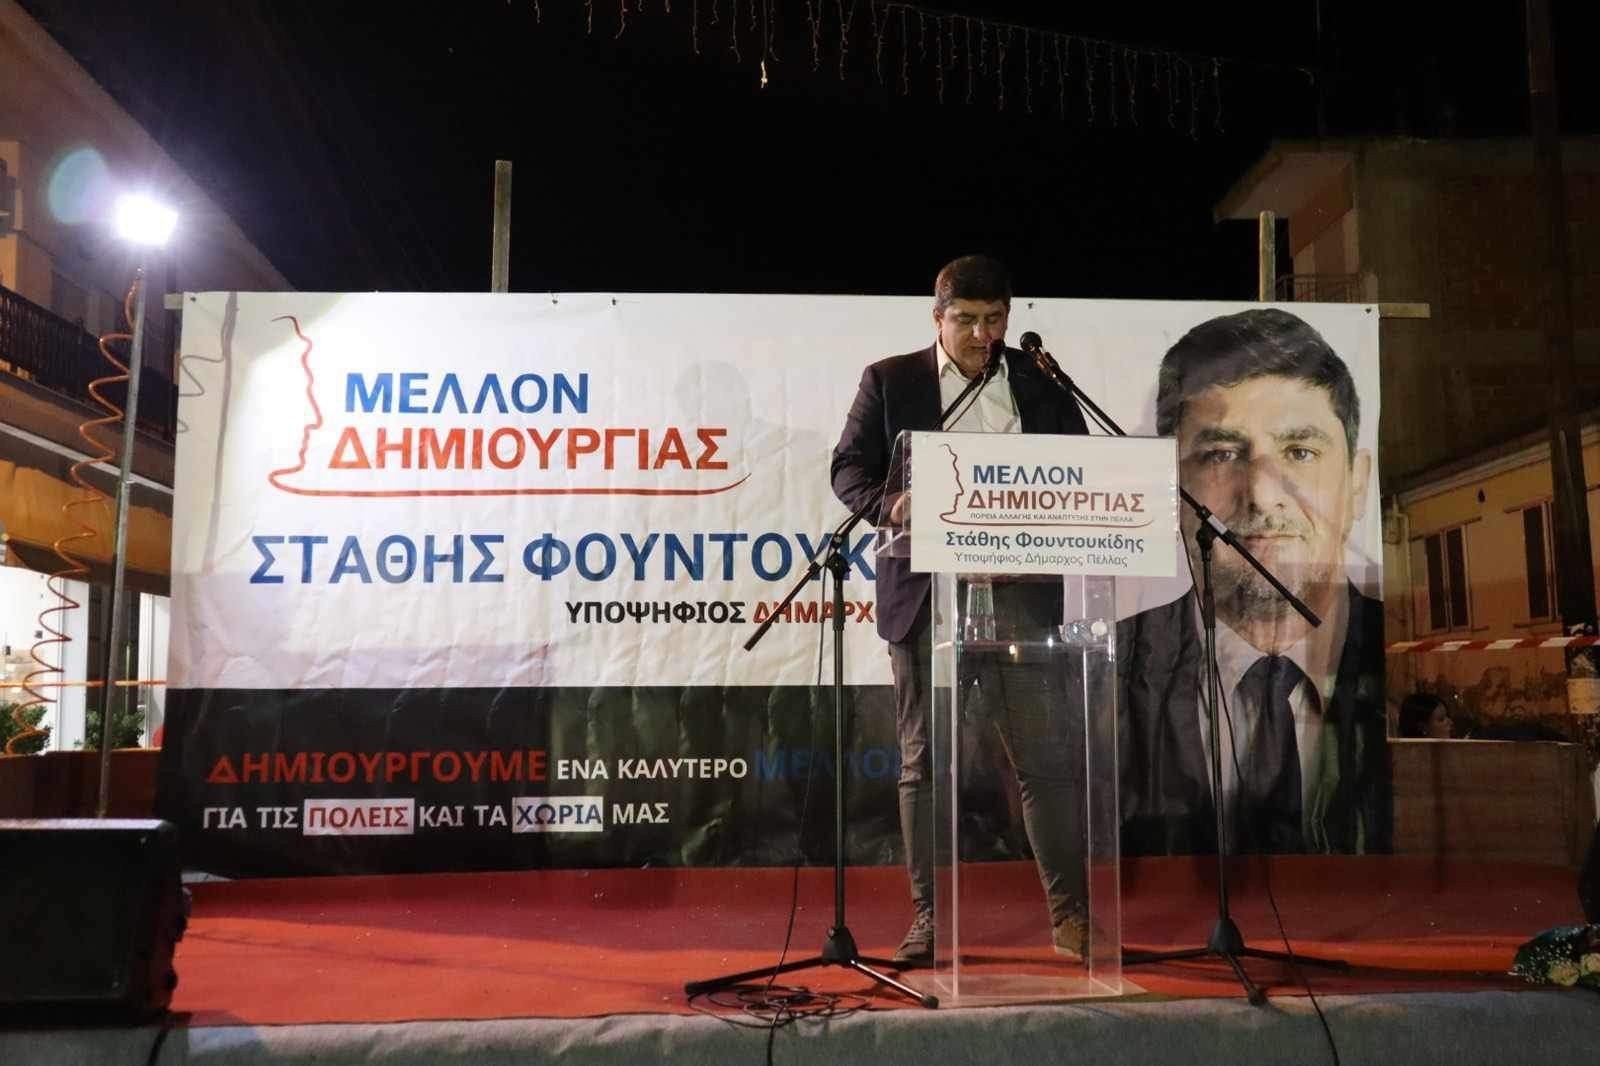 Στάθης Φουντουκίδης: «Η Κρύα Βρύση μπορεί να μην έχει Δήμο, αλλά από σήμερα έχει Δήμαρχο»